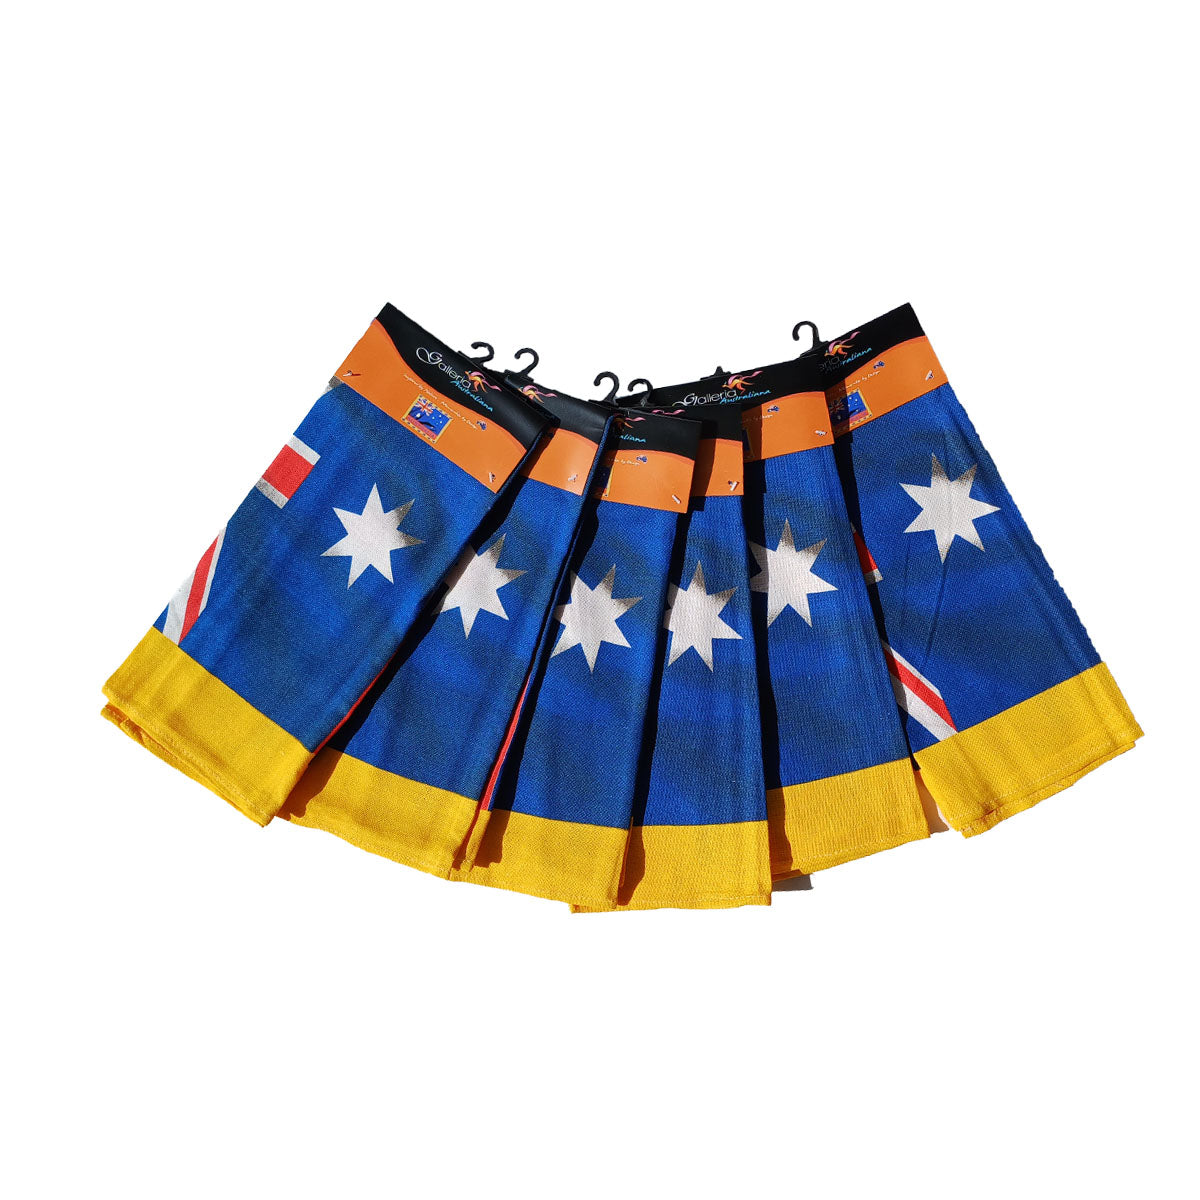 Australian flag tea towel